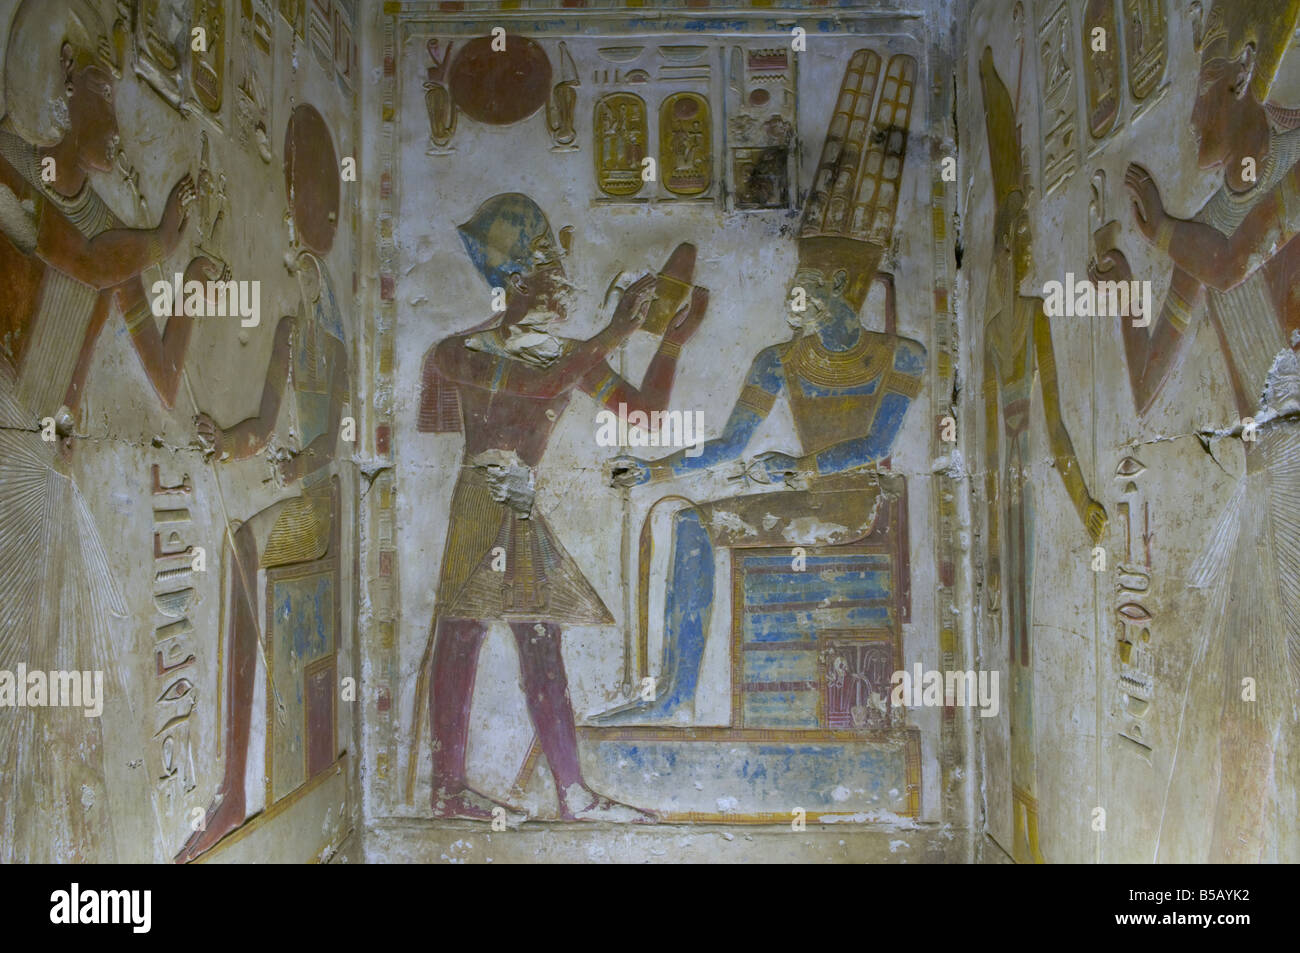 Panneau du temple d'Osiris: Horus présente la régalia royale à un pharaon adorant à Abydos l'une des plus anciennes villes de l'Egypte ancienne Banque D'Images